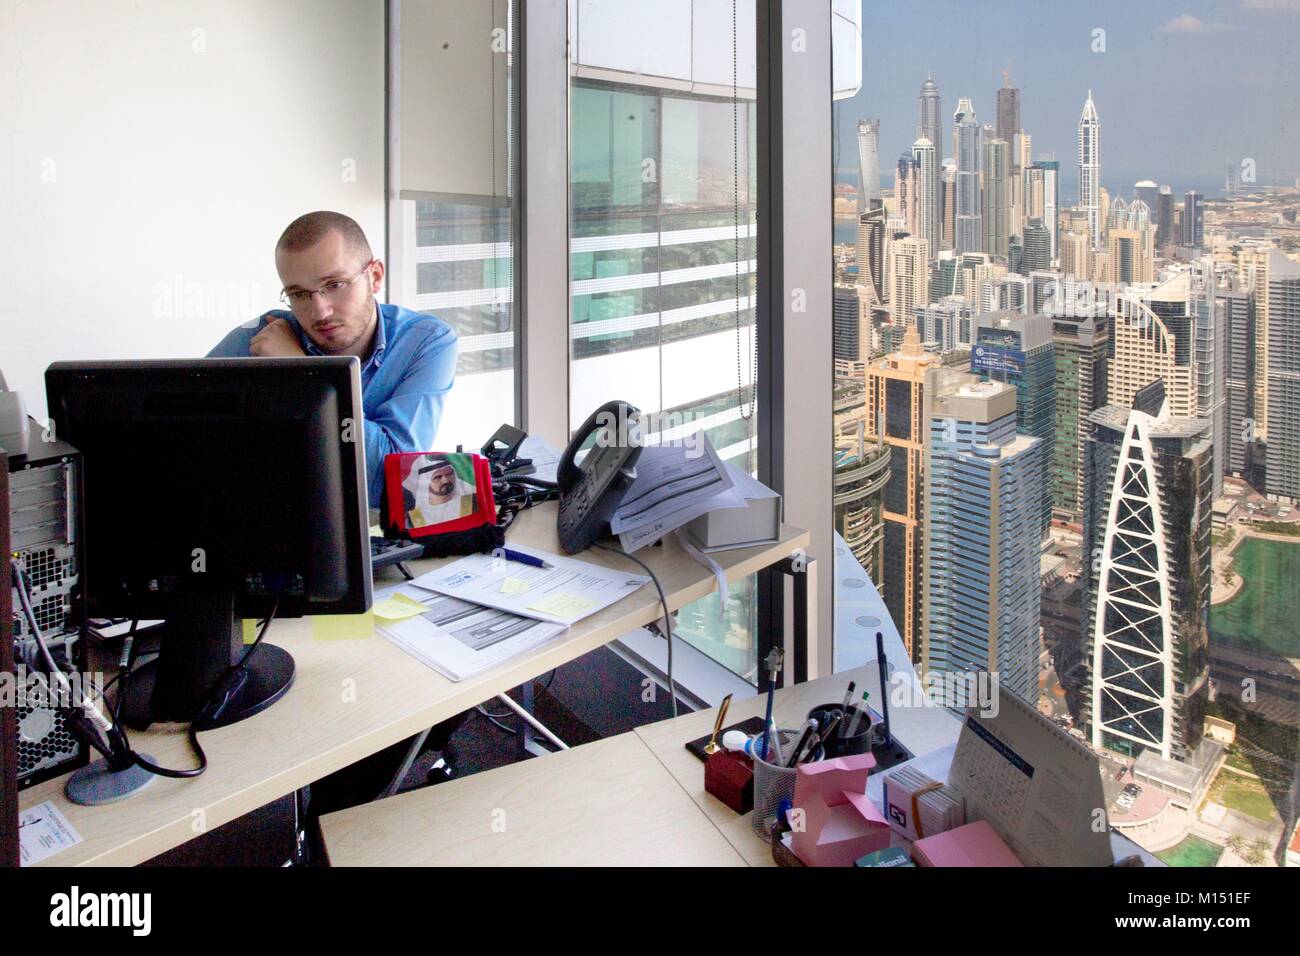 Emirats arabes unis, dubaï, bureau avec vue sur JLT, Jumeirah Lake Towers et Al Sufouh towers Banque D'Images